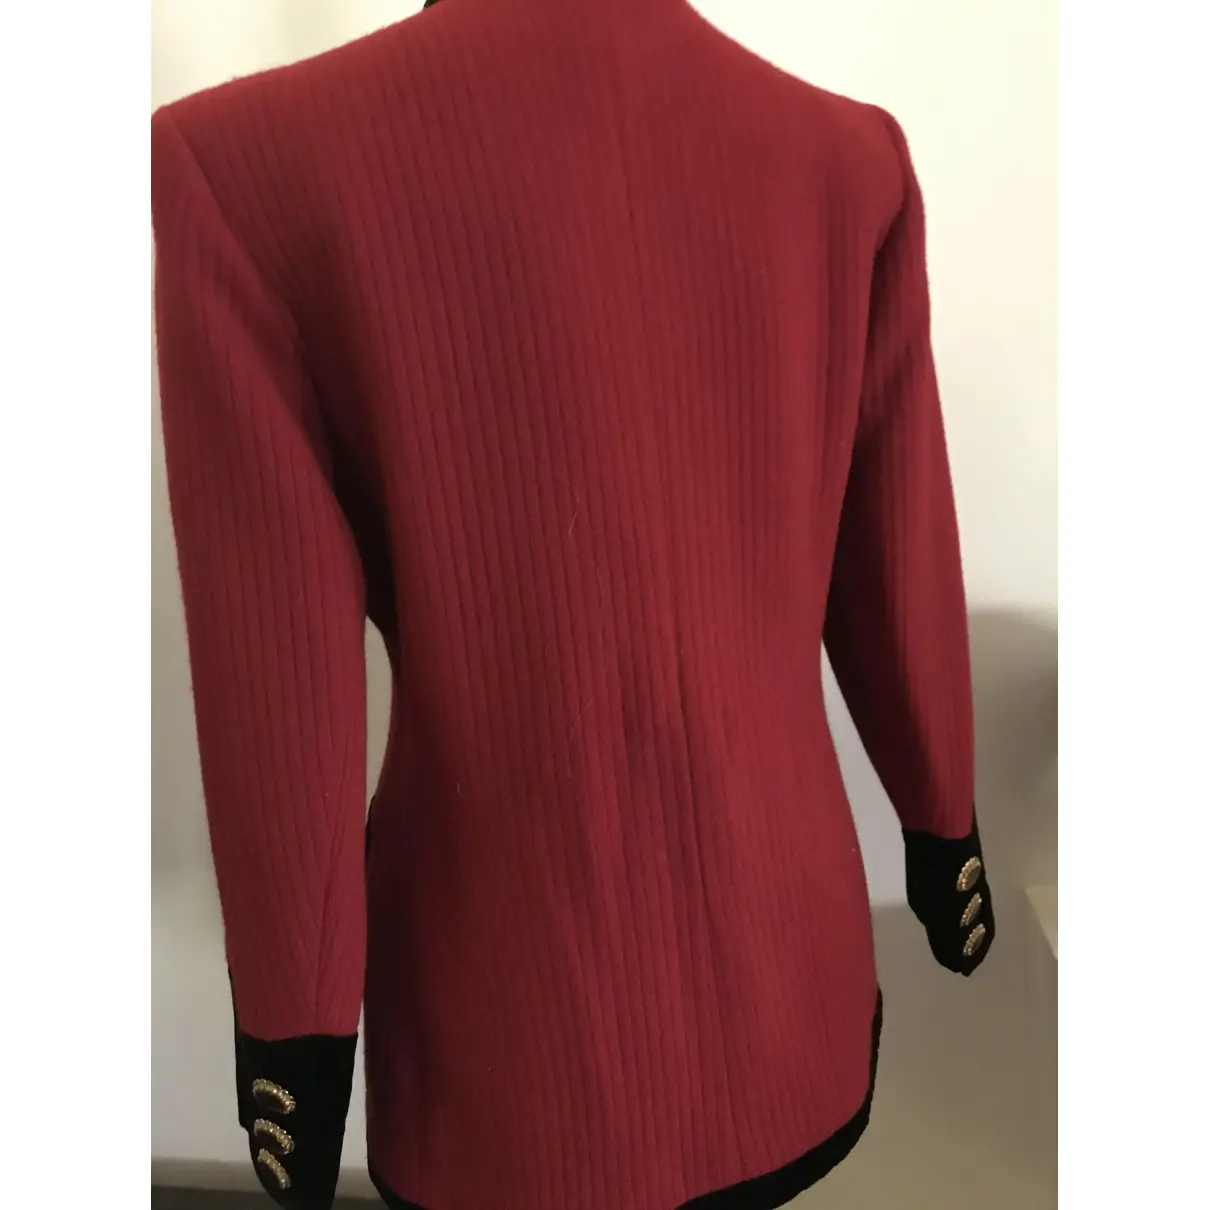 Buy Yves Saint Laurent Wool blazer online - Vintage